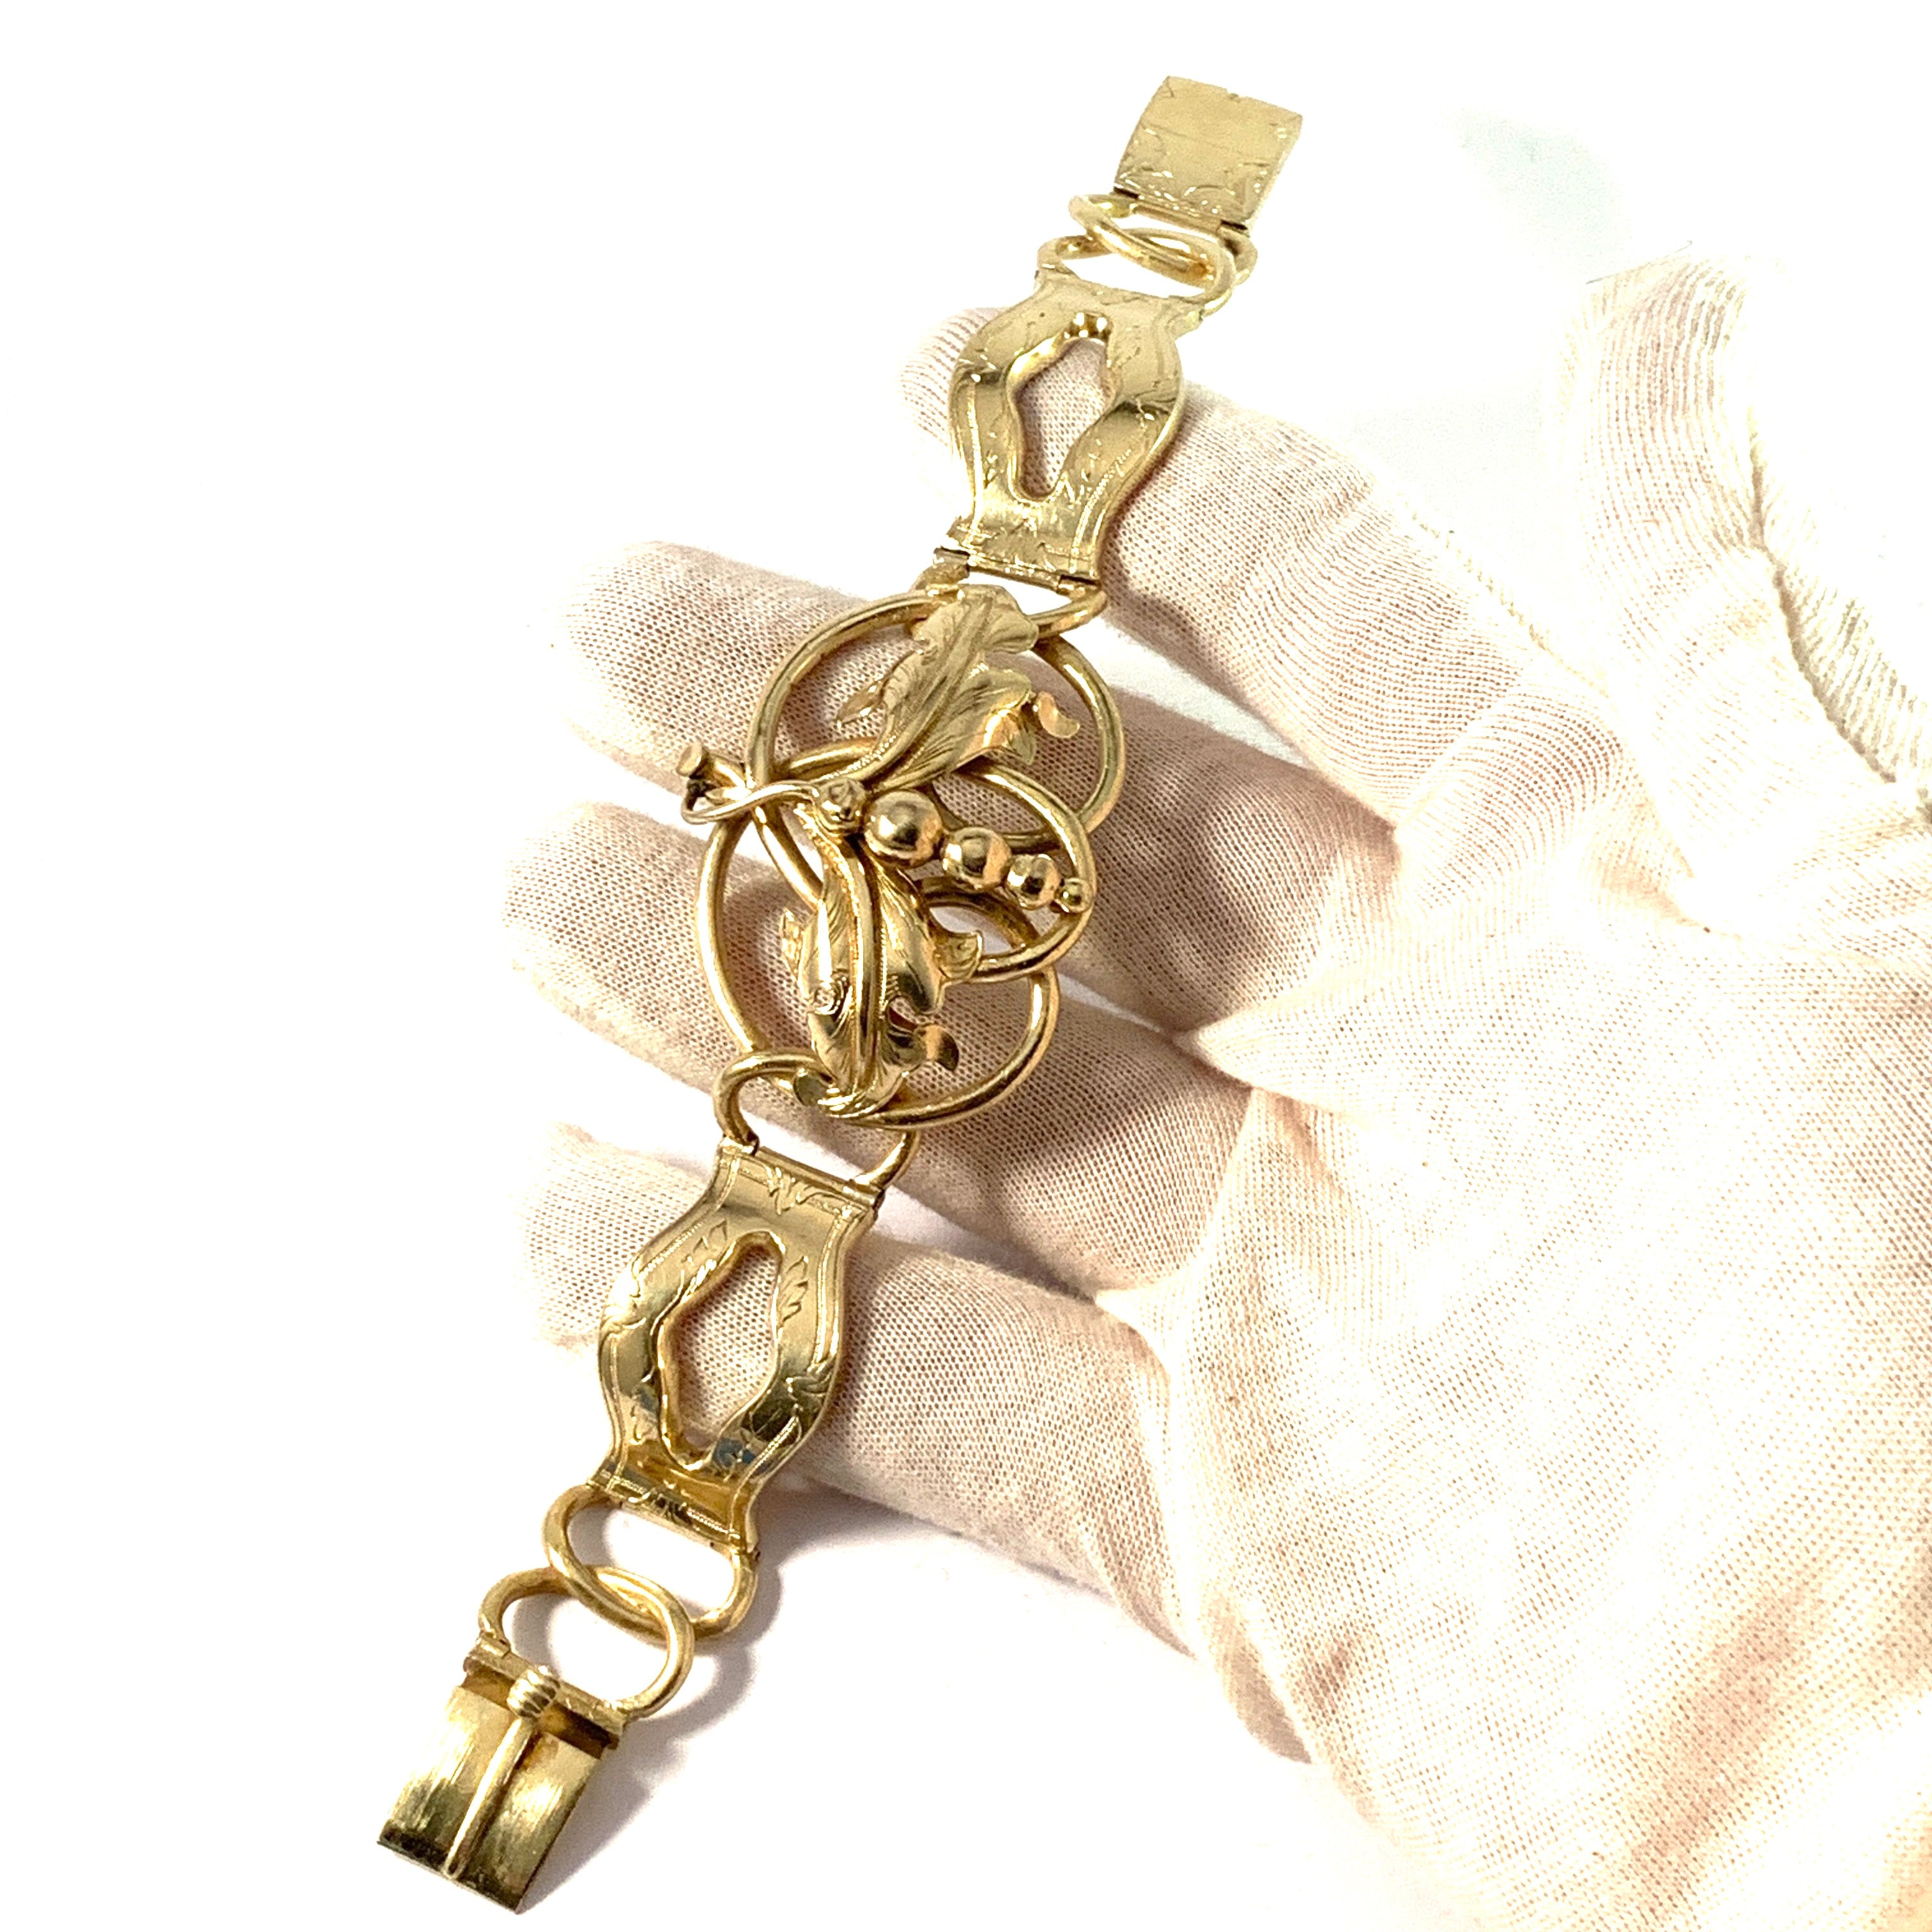 C A Pousette, Sweden 1856. Antique Victorian Silver Vermeil Bracelet.